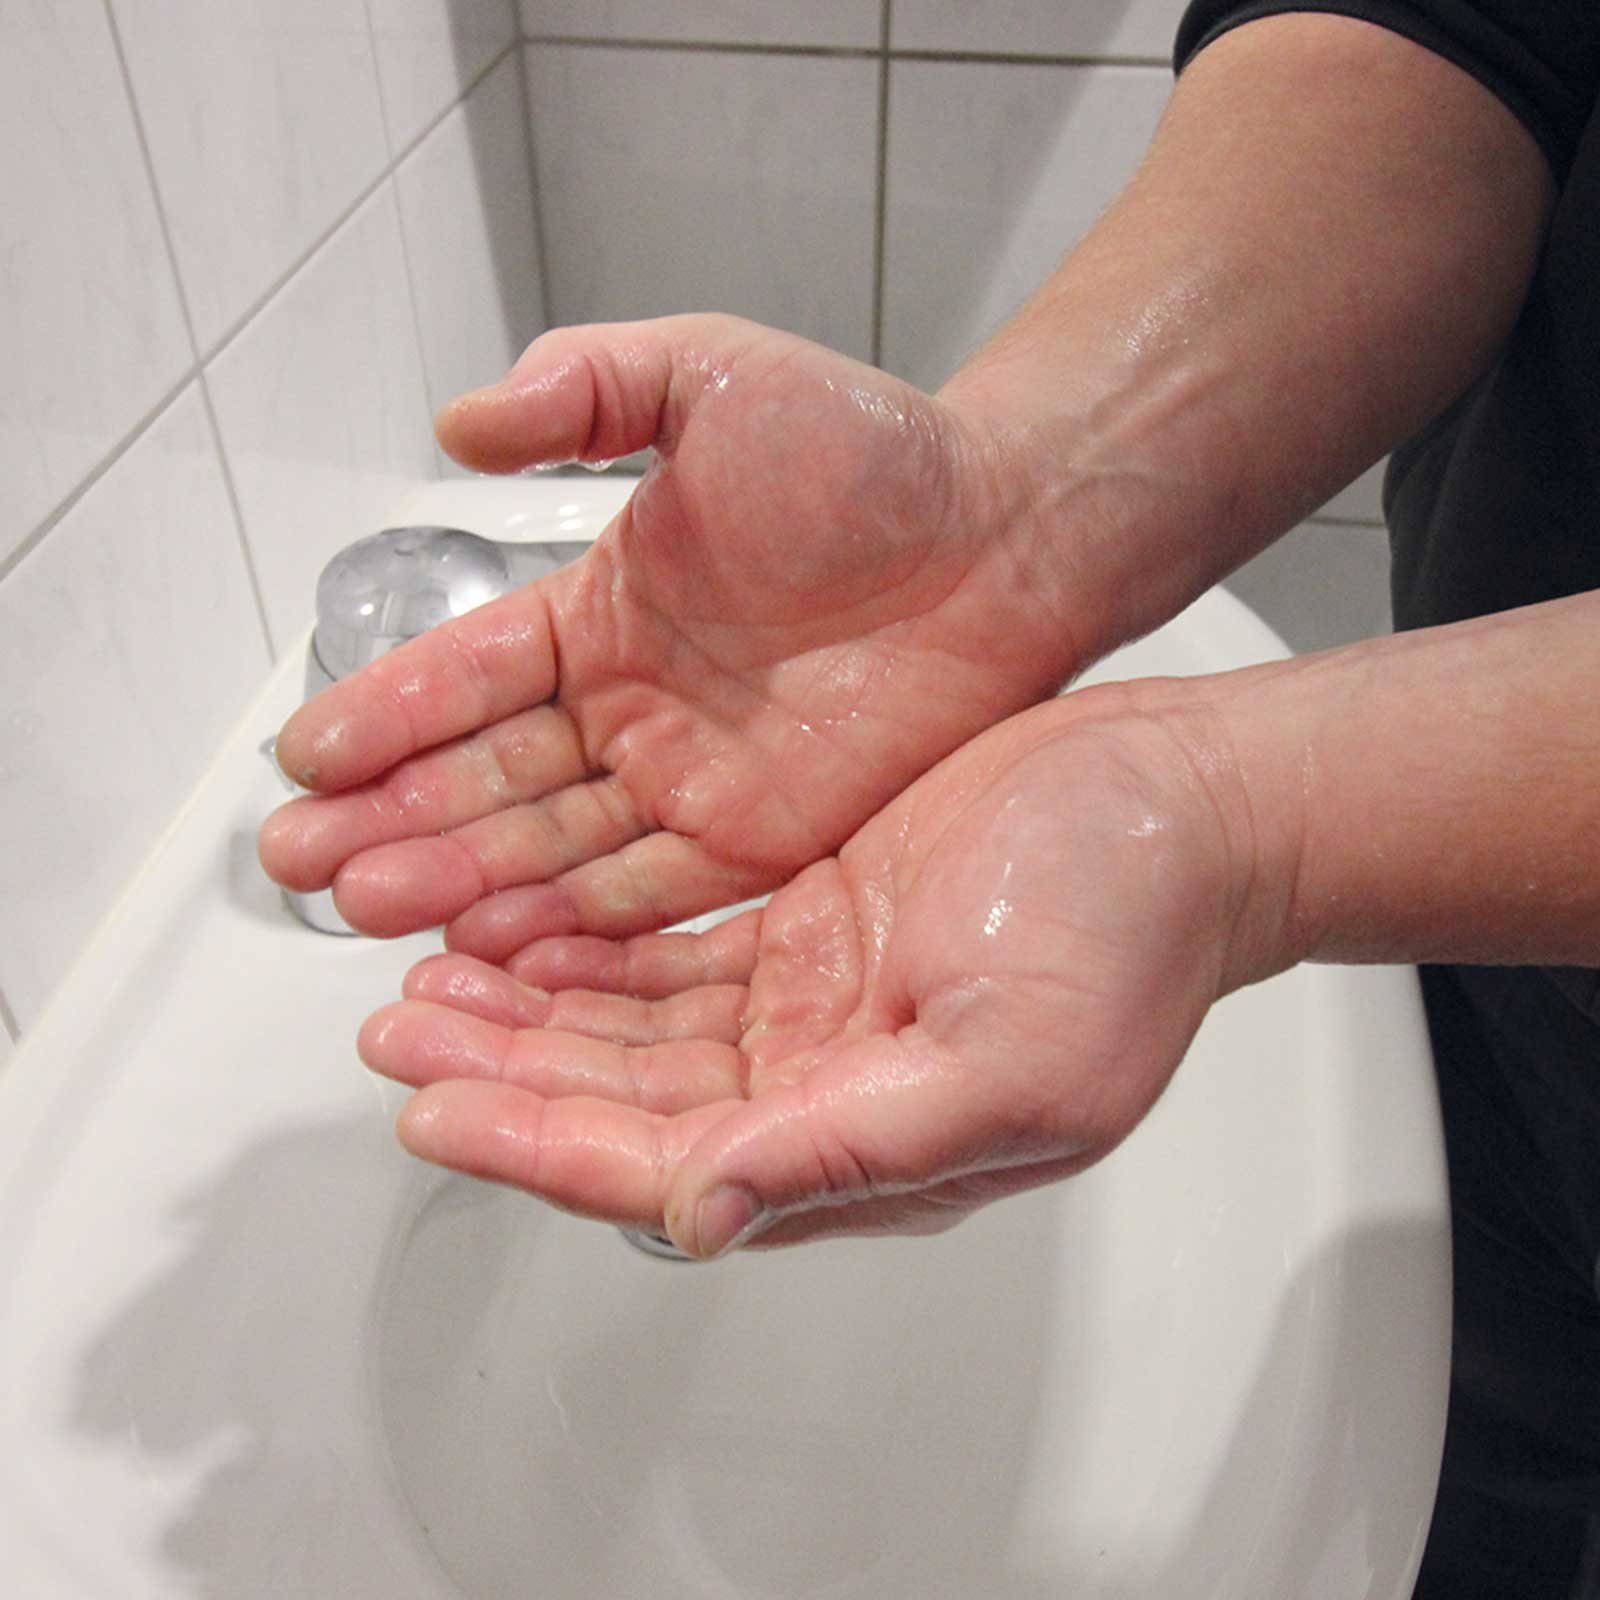 TECHNOLIT® Handcreme TECHNOLIT Handreiniger Technoclean Seife Handwaschpaste 30L Waschpaste